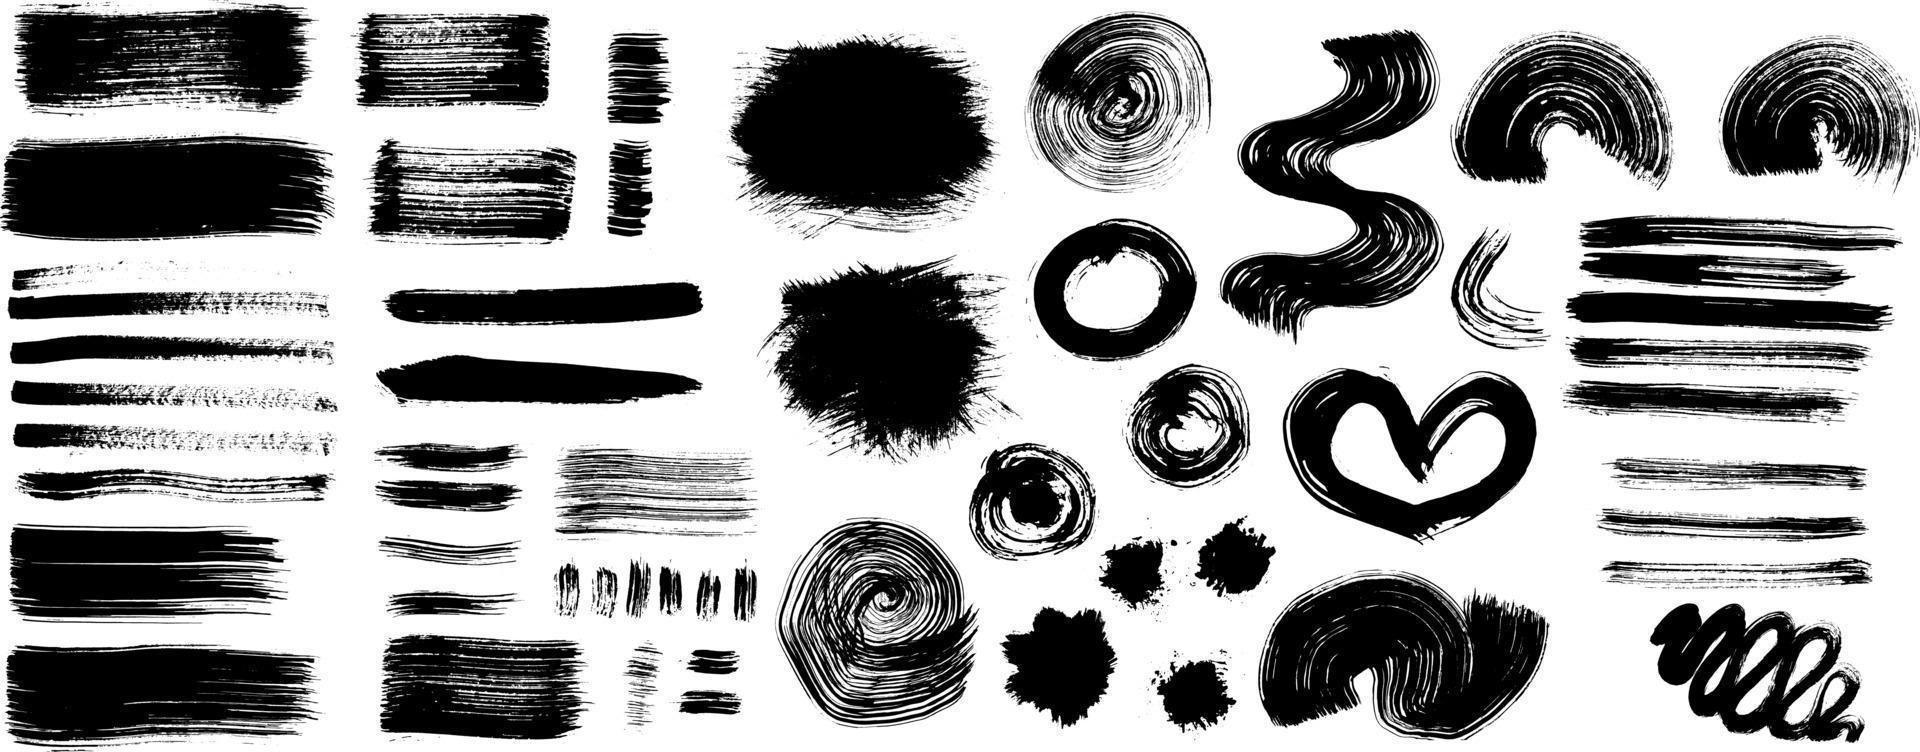 grunge zwart-wit stedelijke vector grote set texturen sjabloon. donkere vuile stof overlay nood achtergrond. creëer eenvoudig een abstract gestippeld, gekrast, vintage effect met ruis en graan